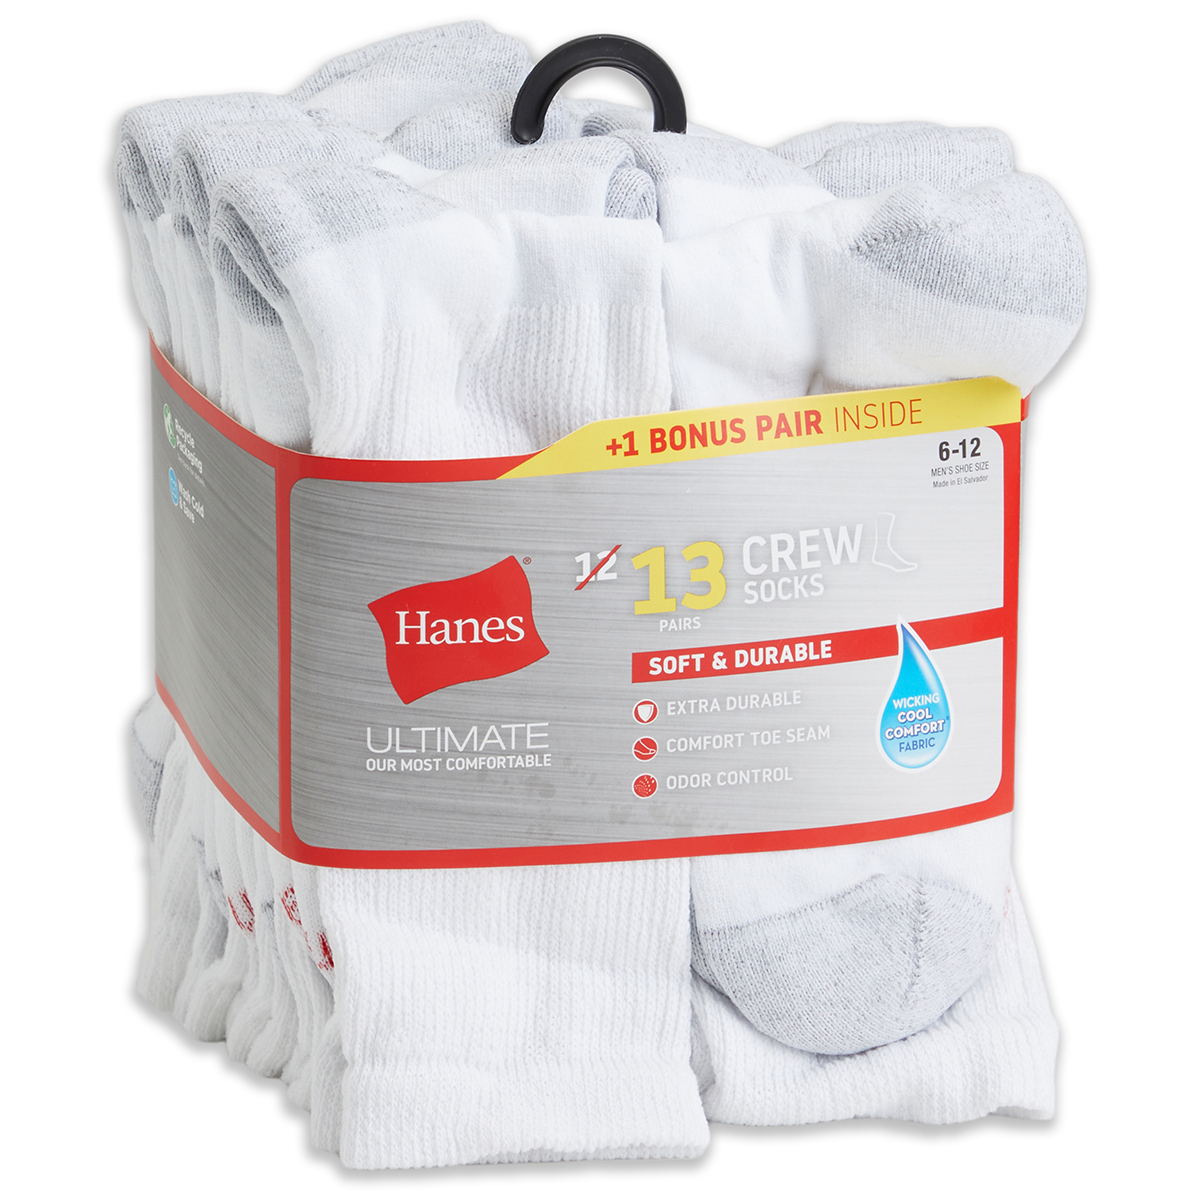 Hanes Men's Ultimate Crew Socks, 13 Pack, White